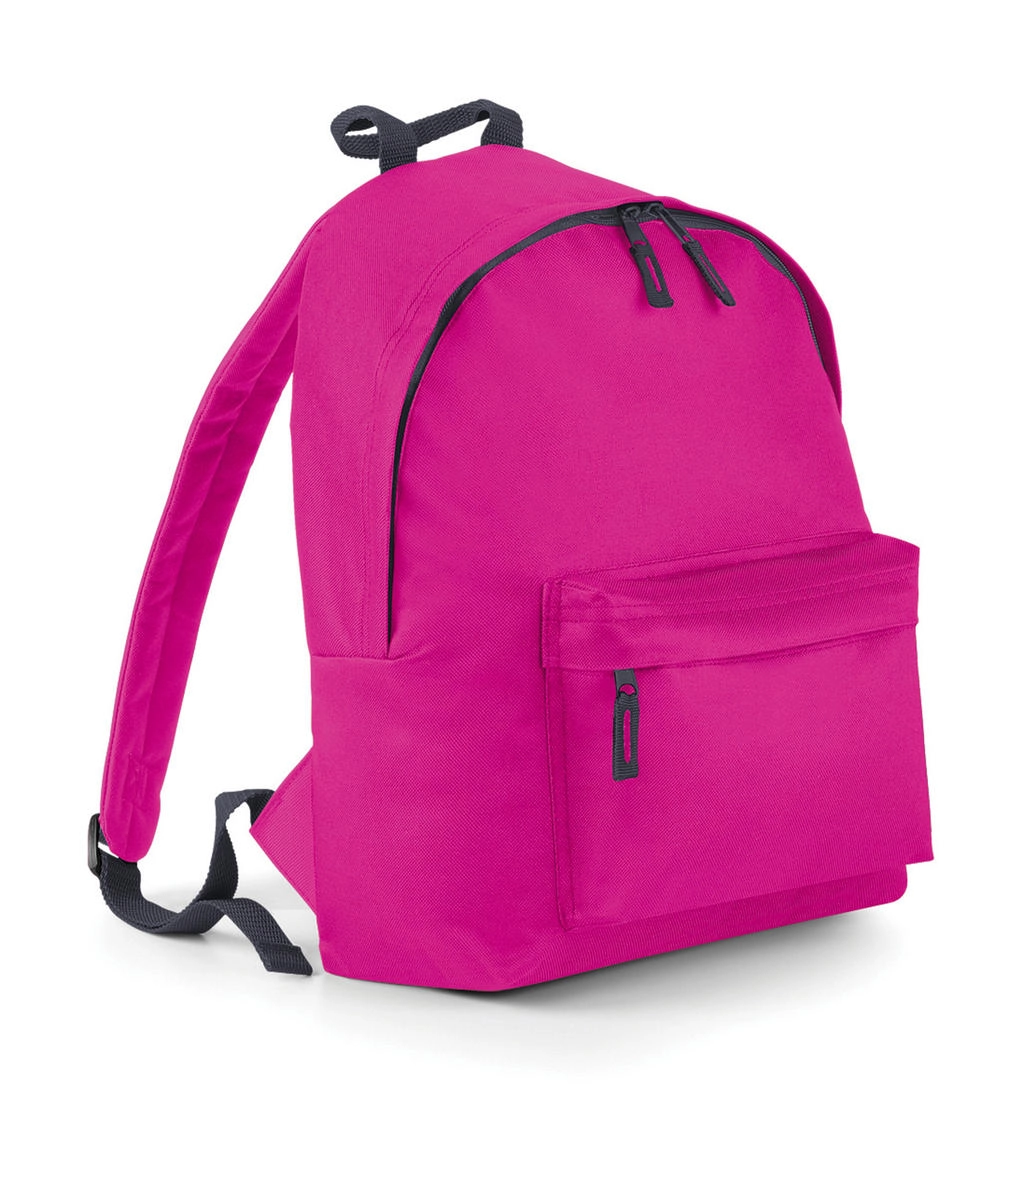 Junior Fashion Backpack zum Besticken und Bedrucken in der Farbe Fuchsia/Graphite Grey mit Ihren Logo, Schriftzug oder Motiv.